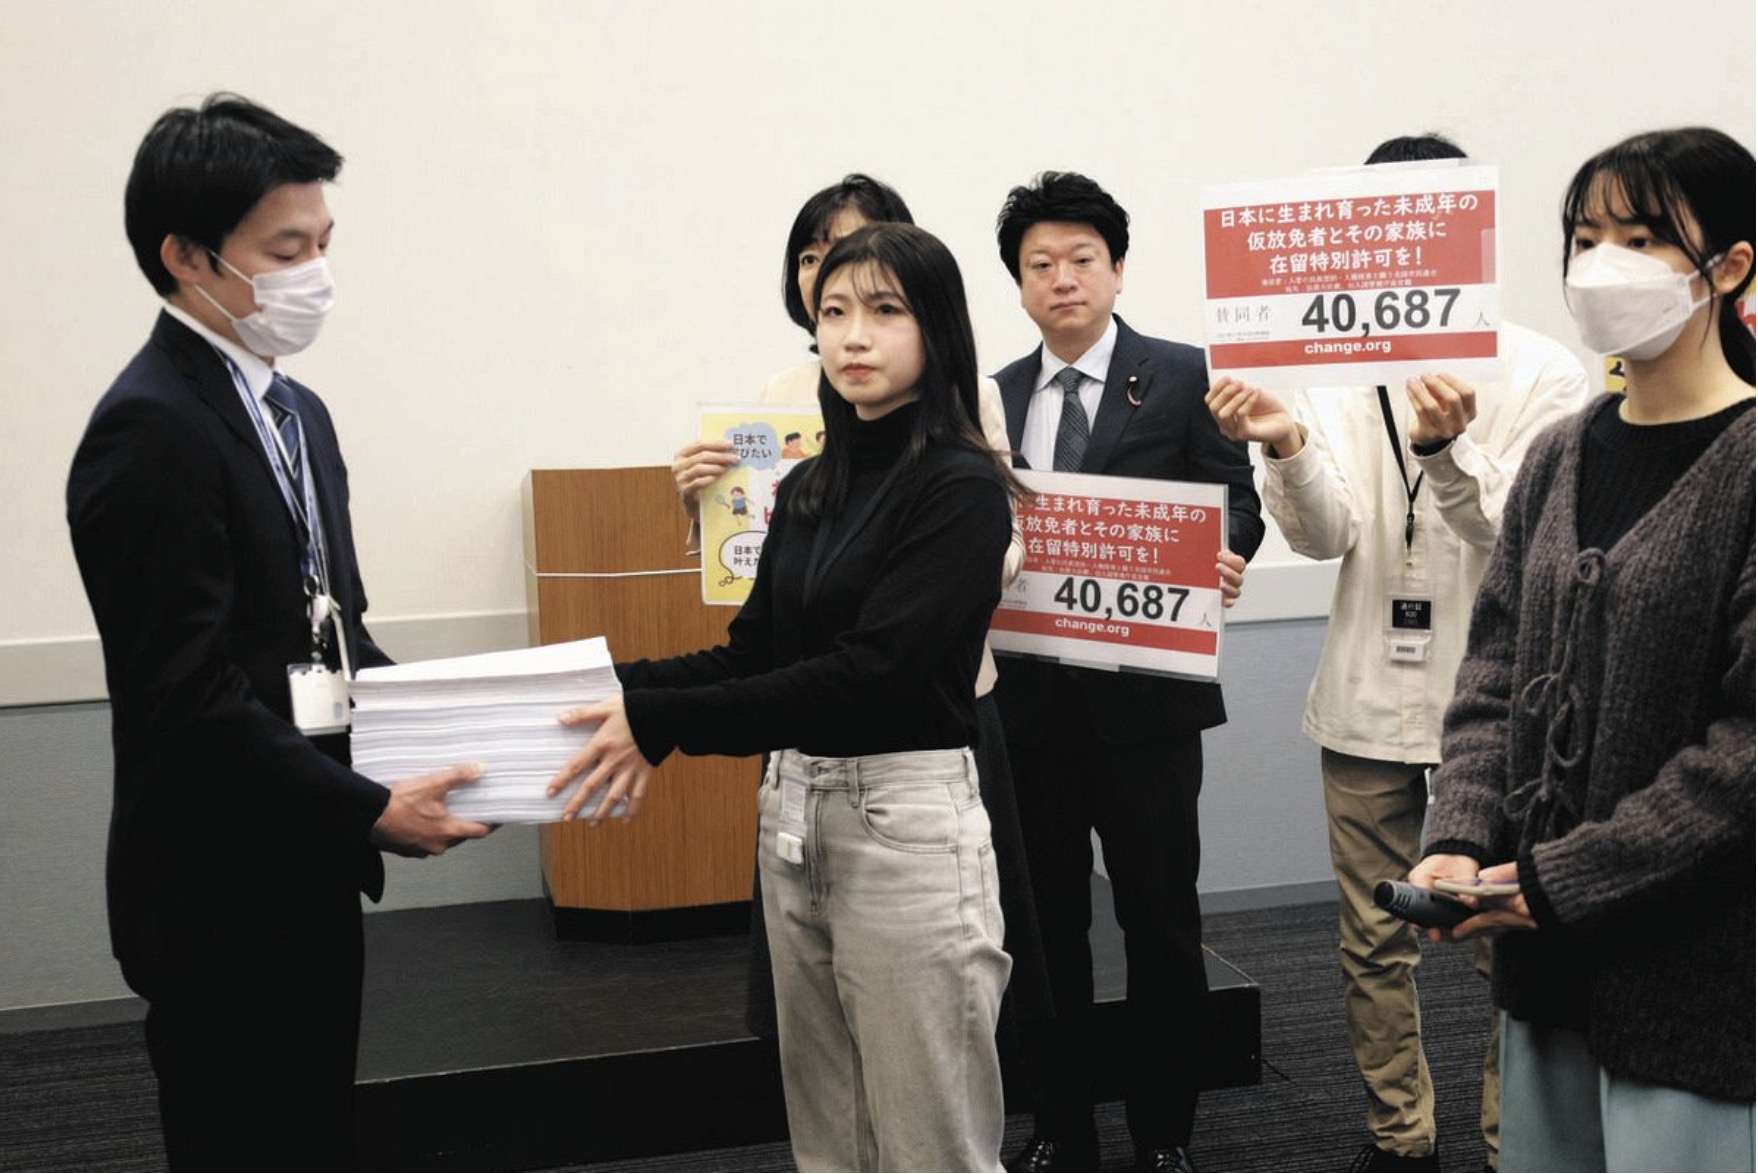 外国人を支援する市民や団体でつくる入管闘争市民連合「日本以外に帰る国のない外国人の子どもたちを救って」在留特別許可を求める署名4万筆超、入管庁に提出